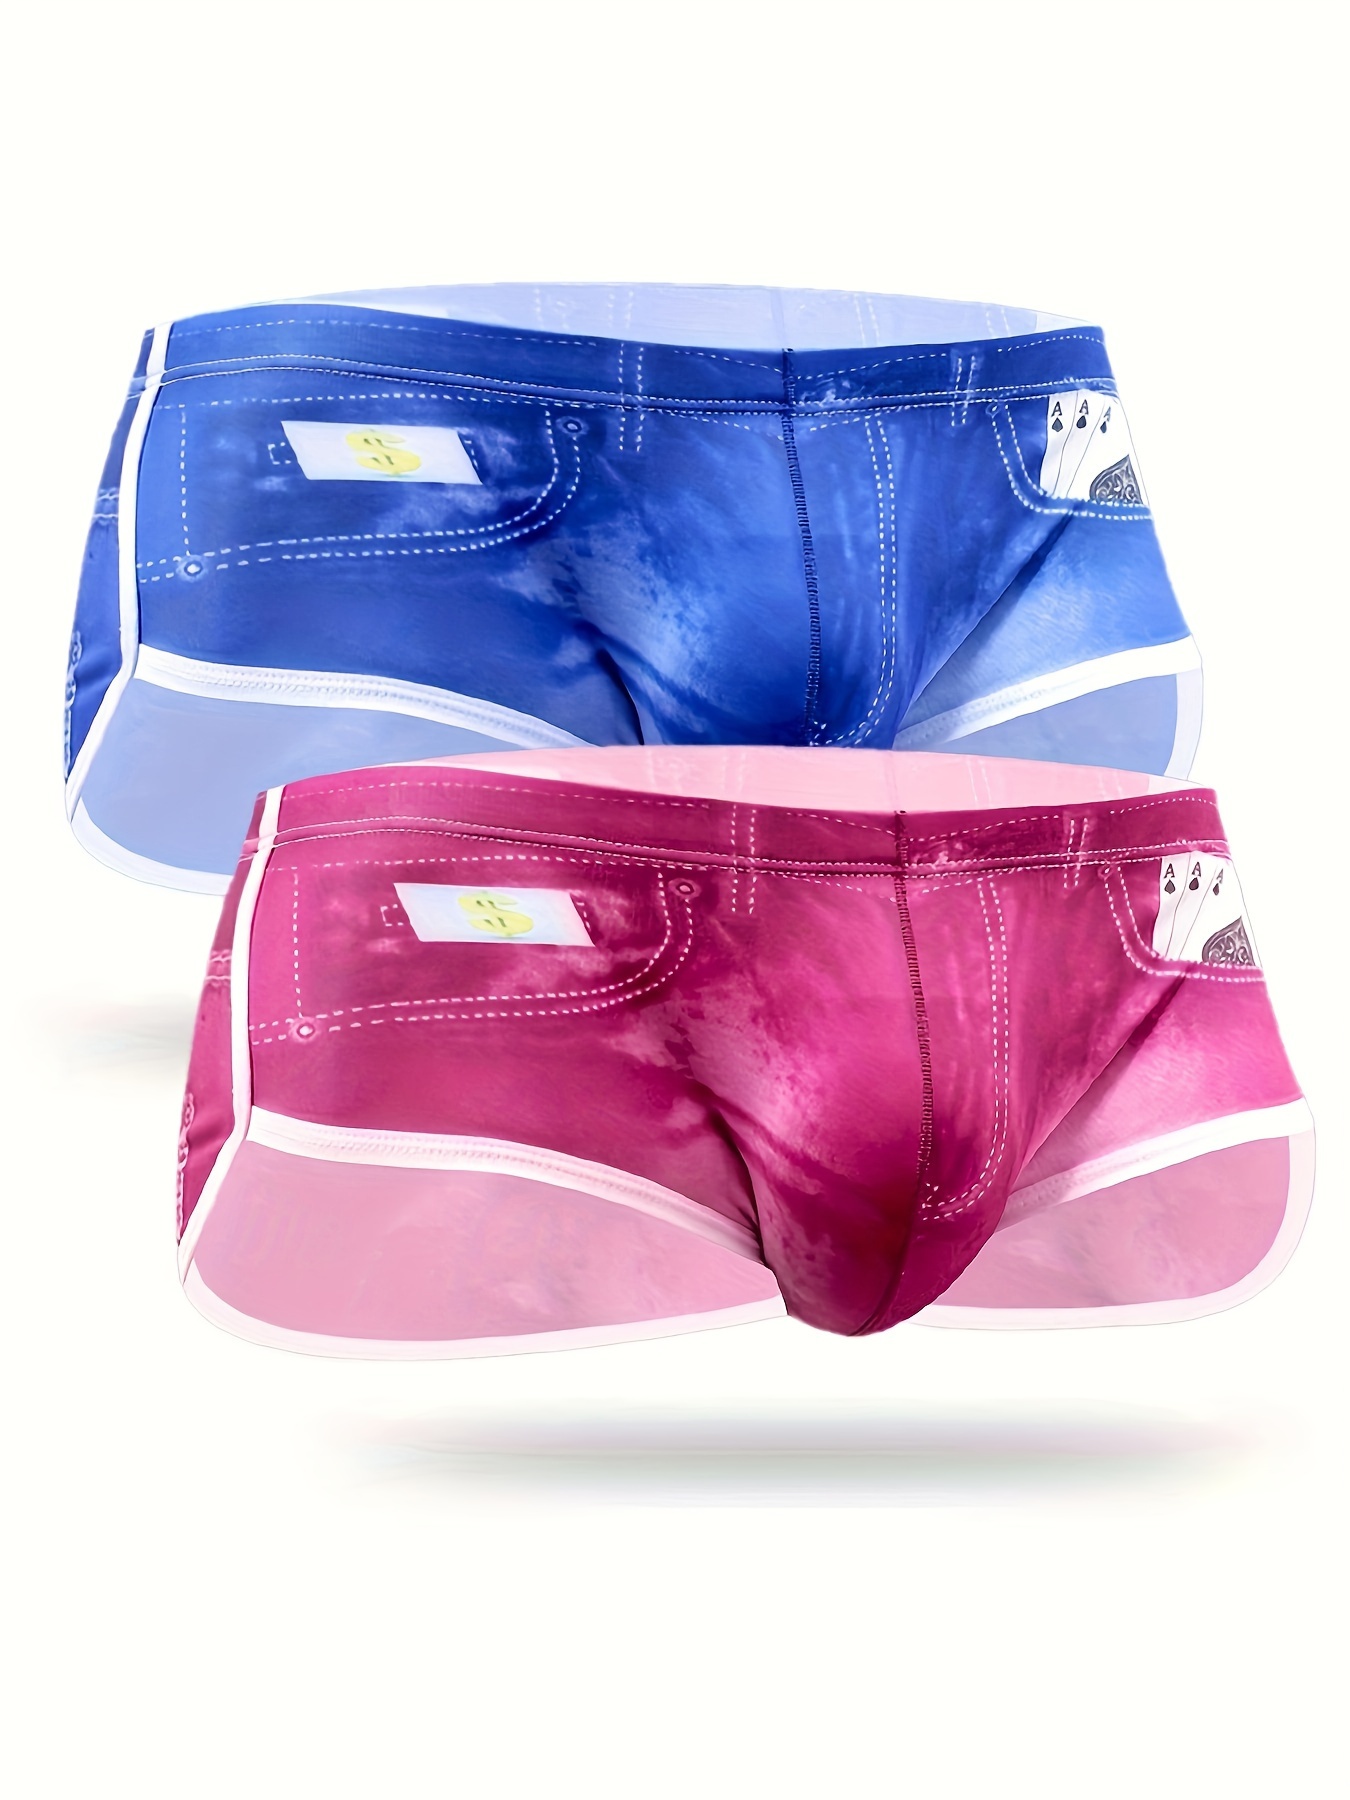 Men Big Pouch Ice Silk 3D Denim Printed Shorts Fake Jean Underwear